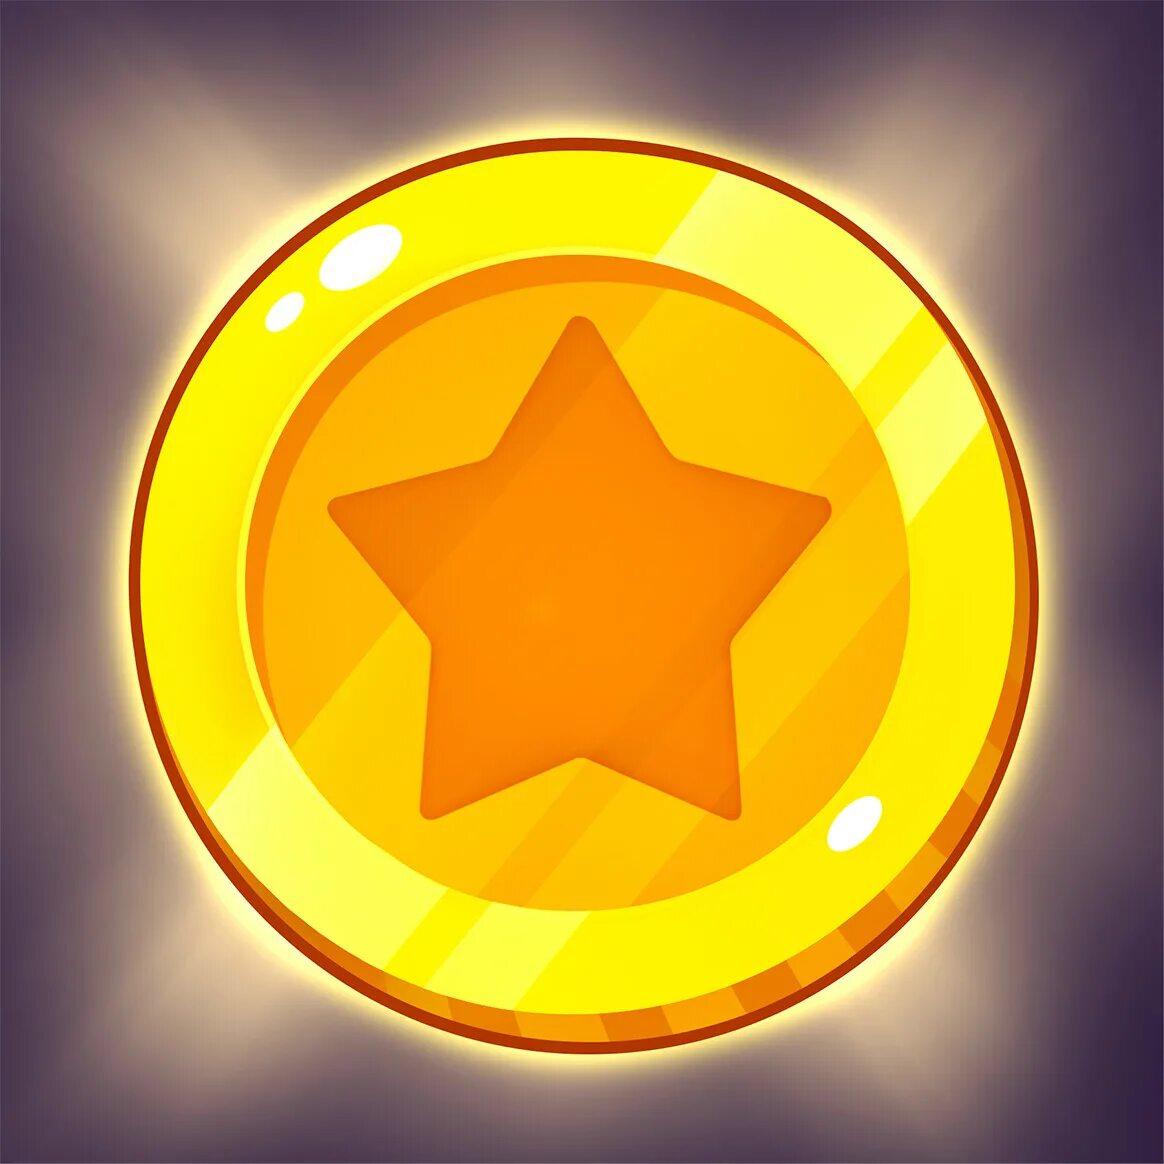 Star coin